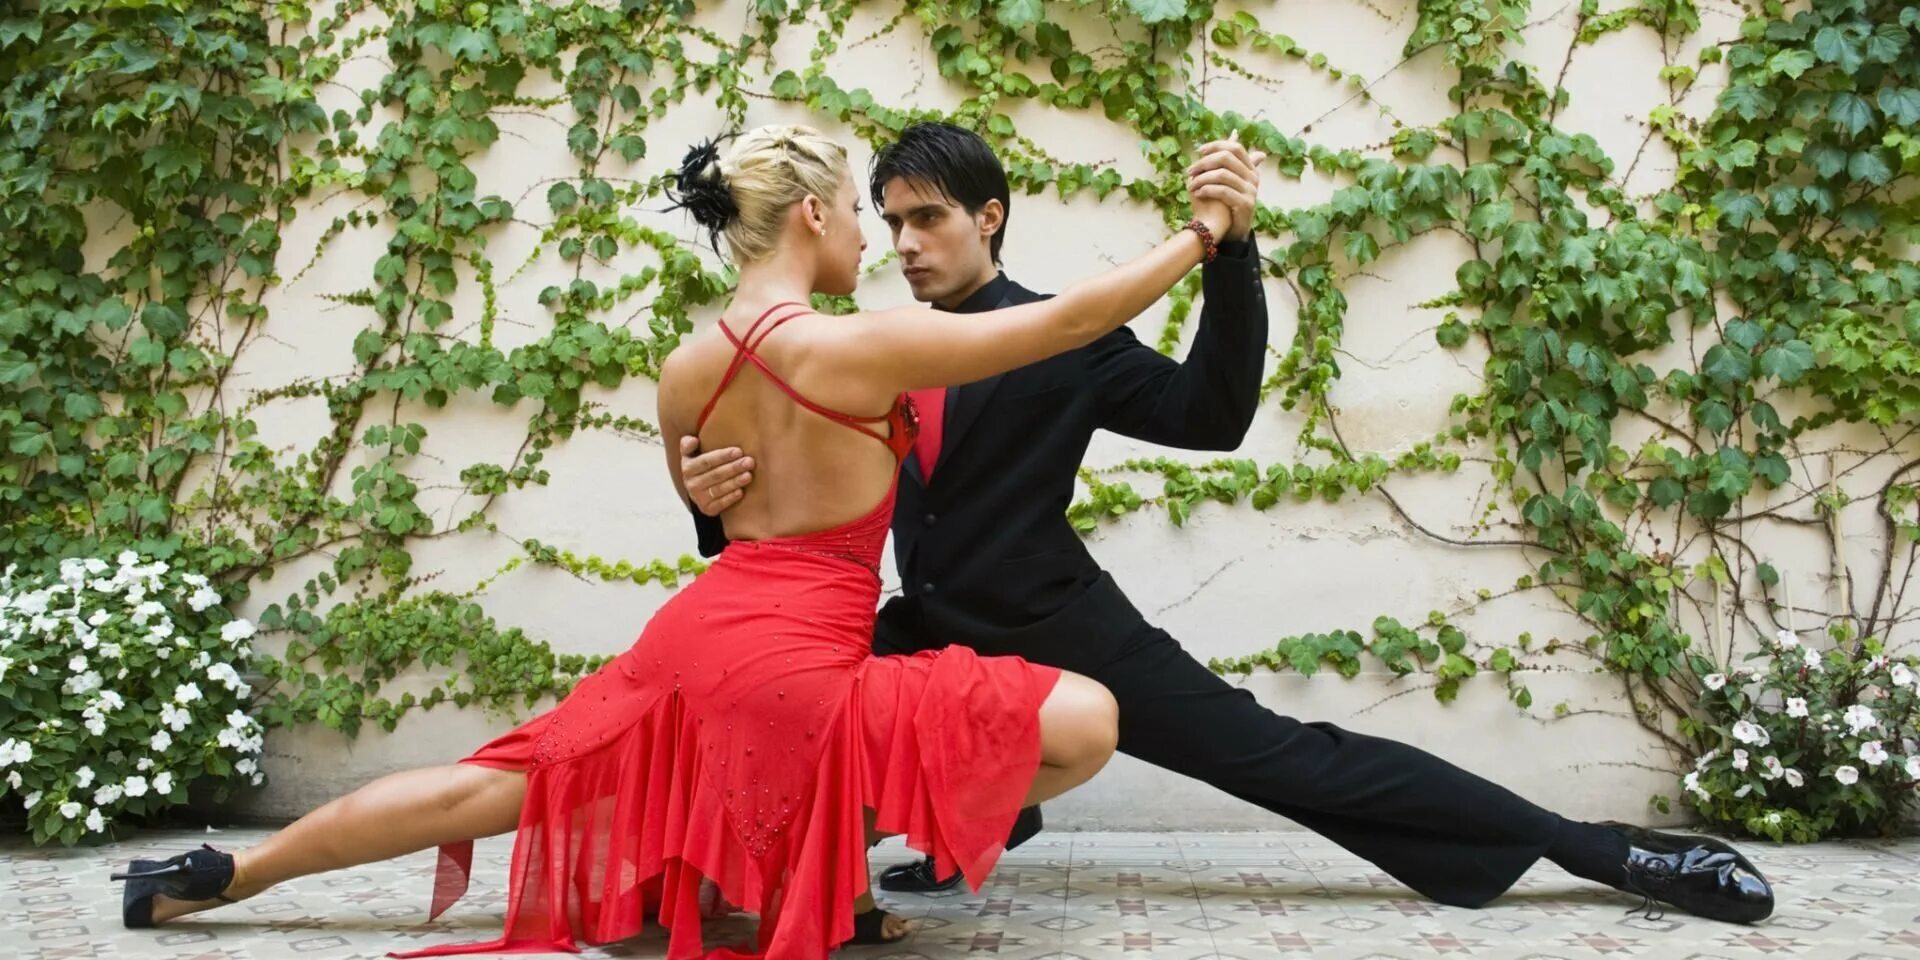 Хороший танец под хорошую песню. Аргентинское танго. Танец пары. Романтический танец. Танго танец.